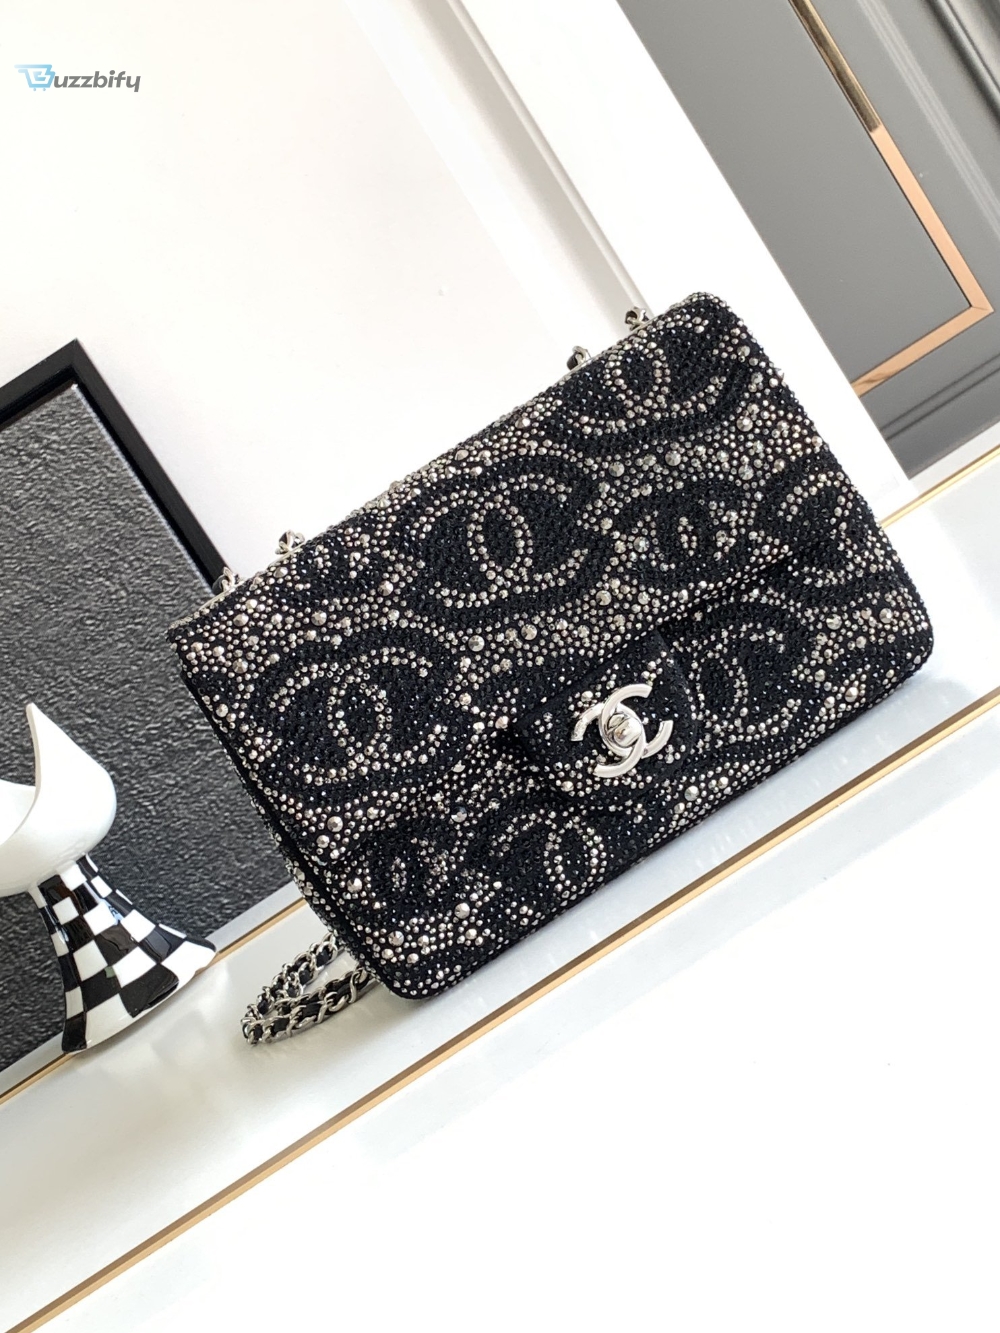 Chanel Paris Double Flap Handbag Black For Women 20Cm  7.9In